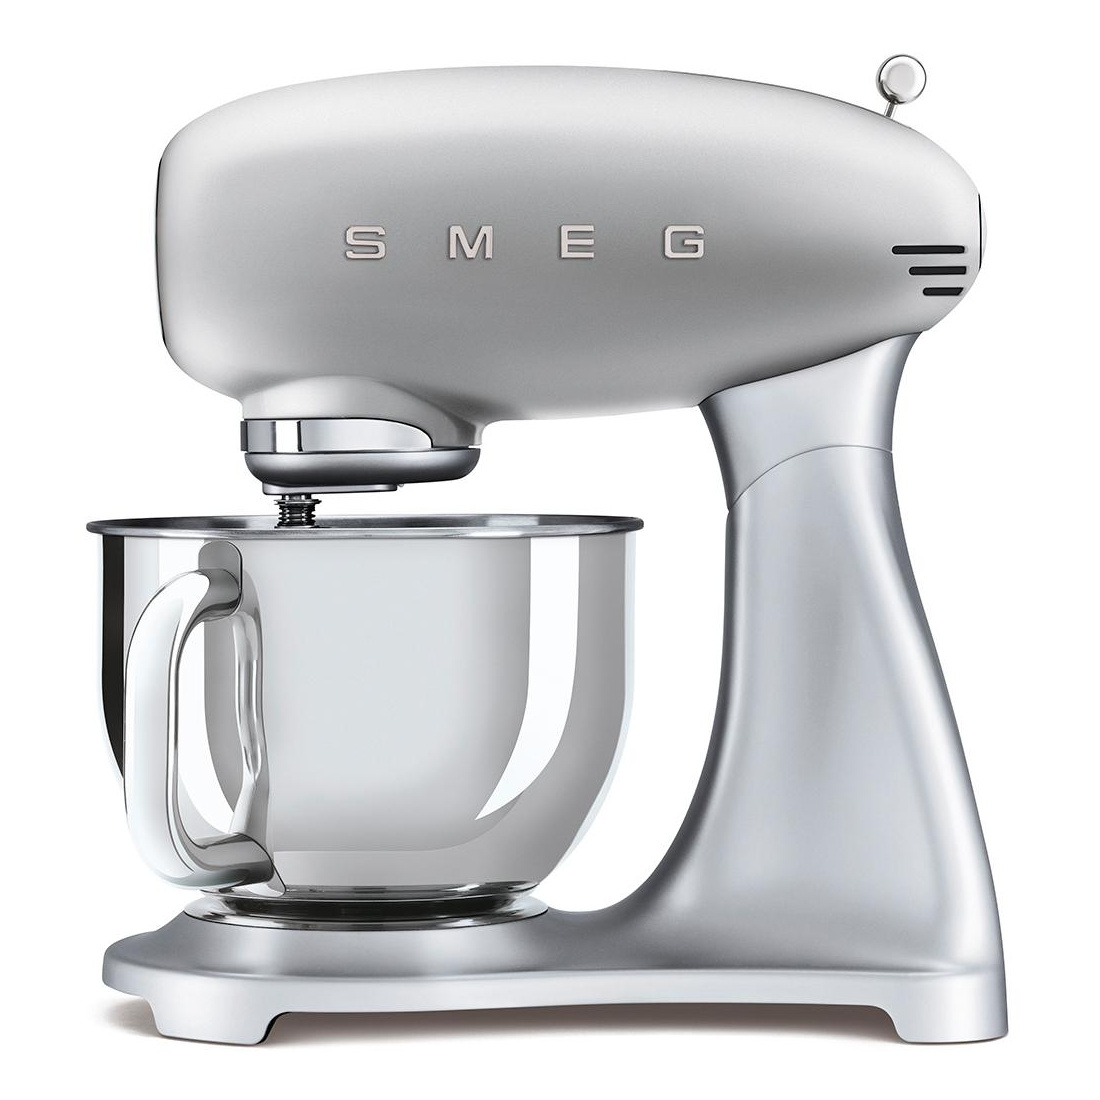 Smeg - SMF02 Küchenmaschine - silber/lackiert/BxHxT 40,2x37,8x22,1cm/10 Geschwindigkeits-Stufen mit Soft-Start von Smeg